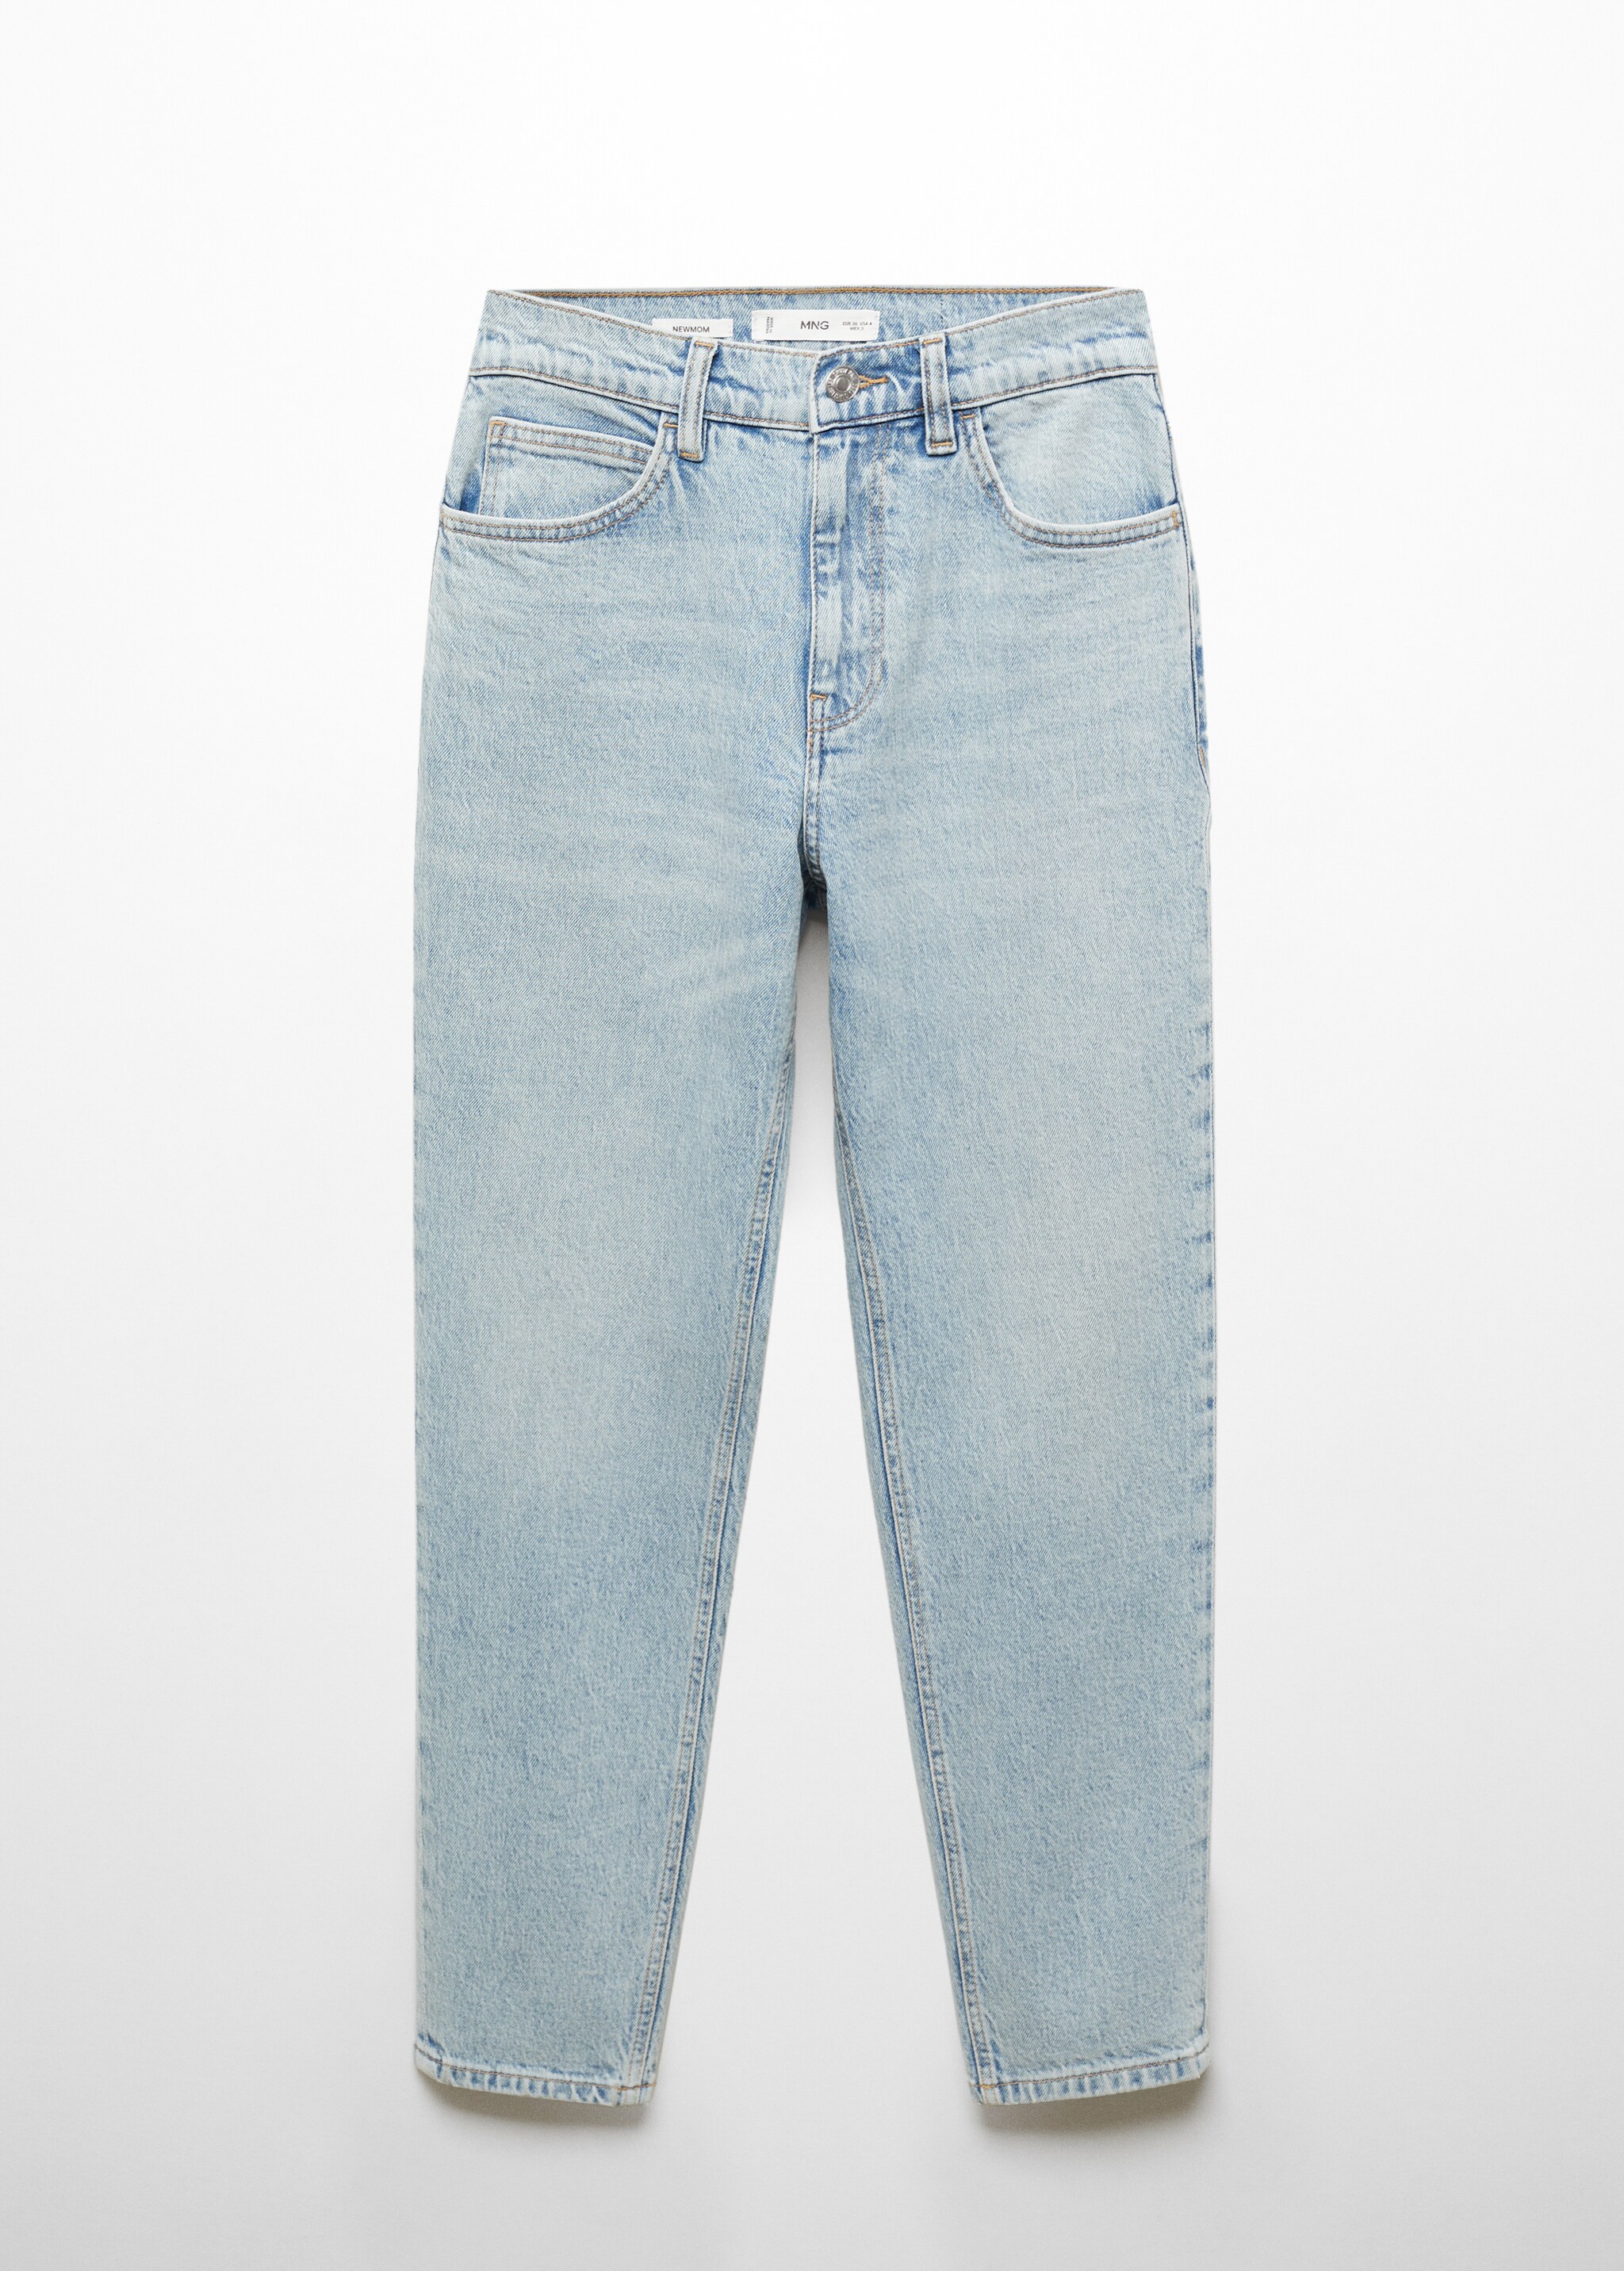 Комфортные джинсы Newmom с высокой талией - Изделие без модели